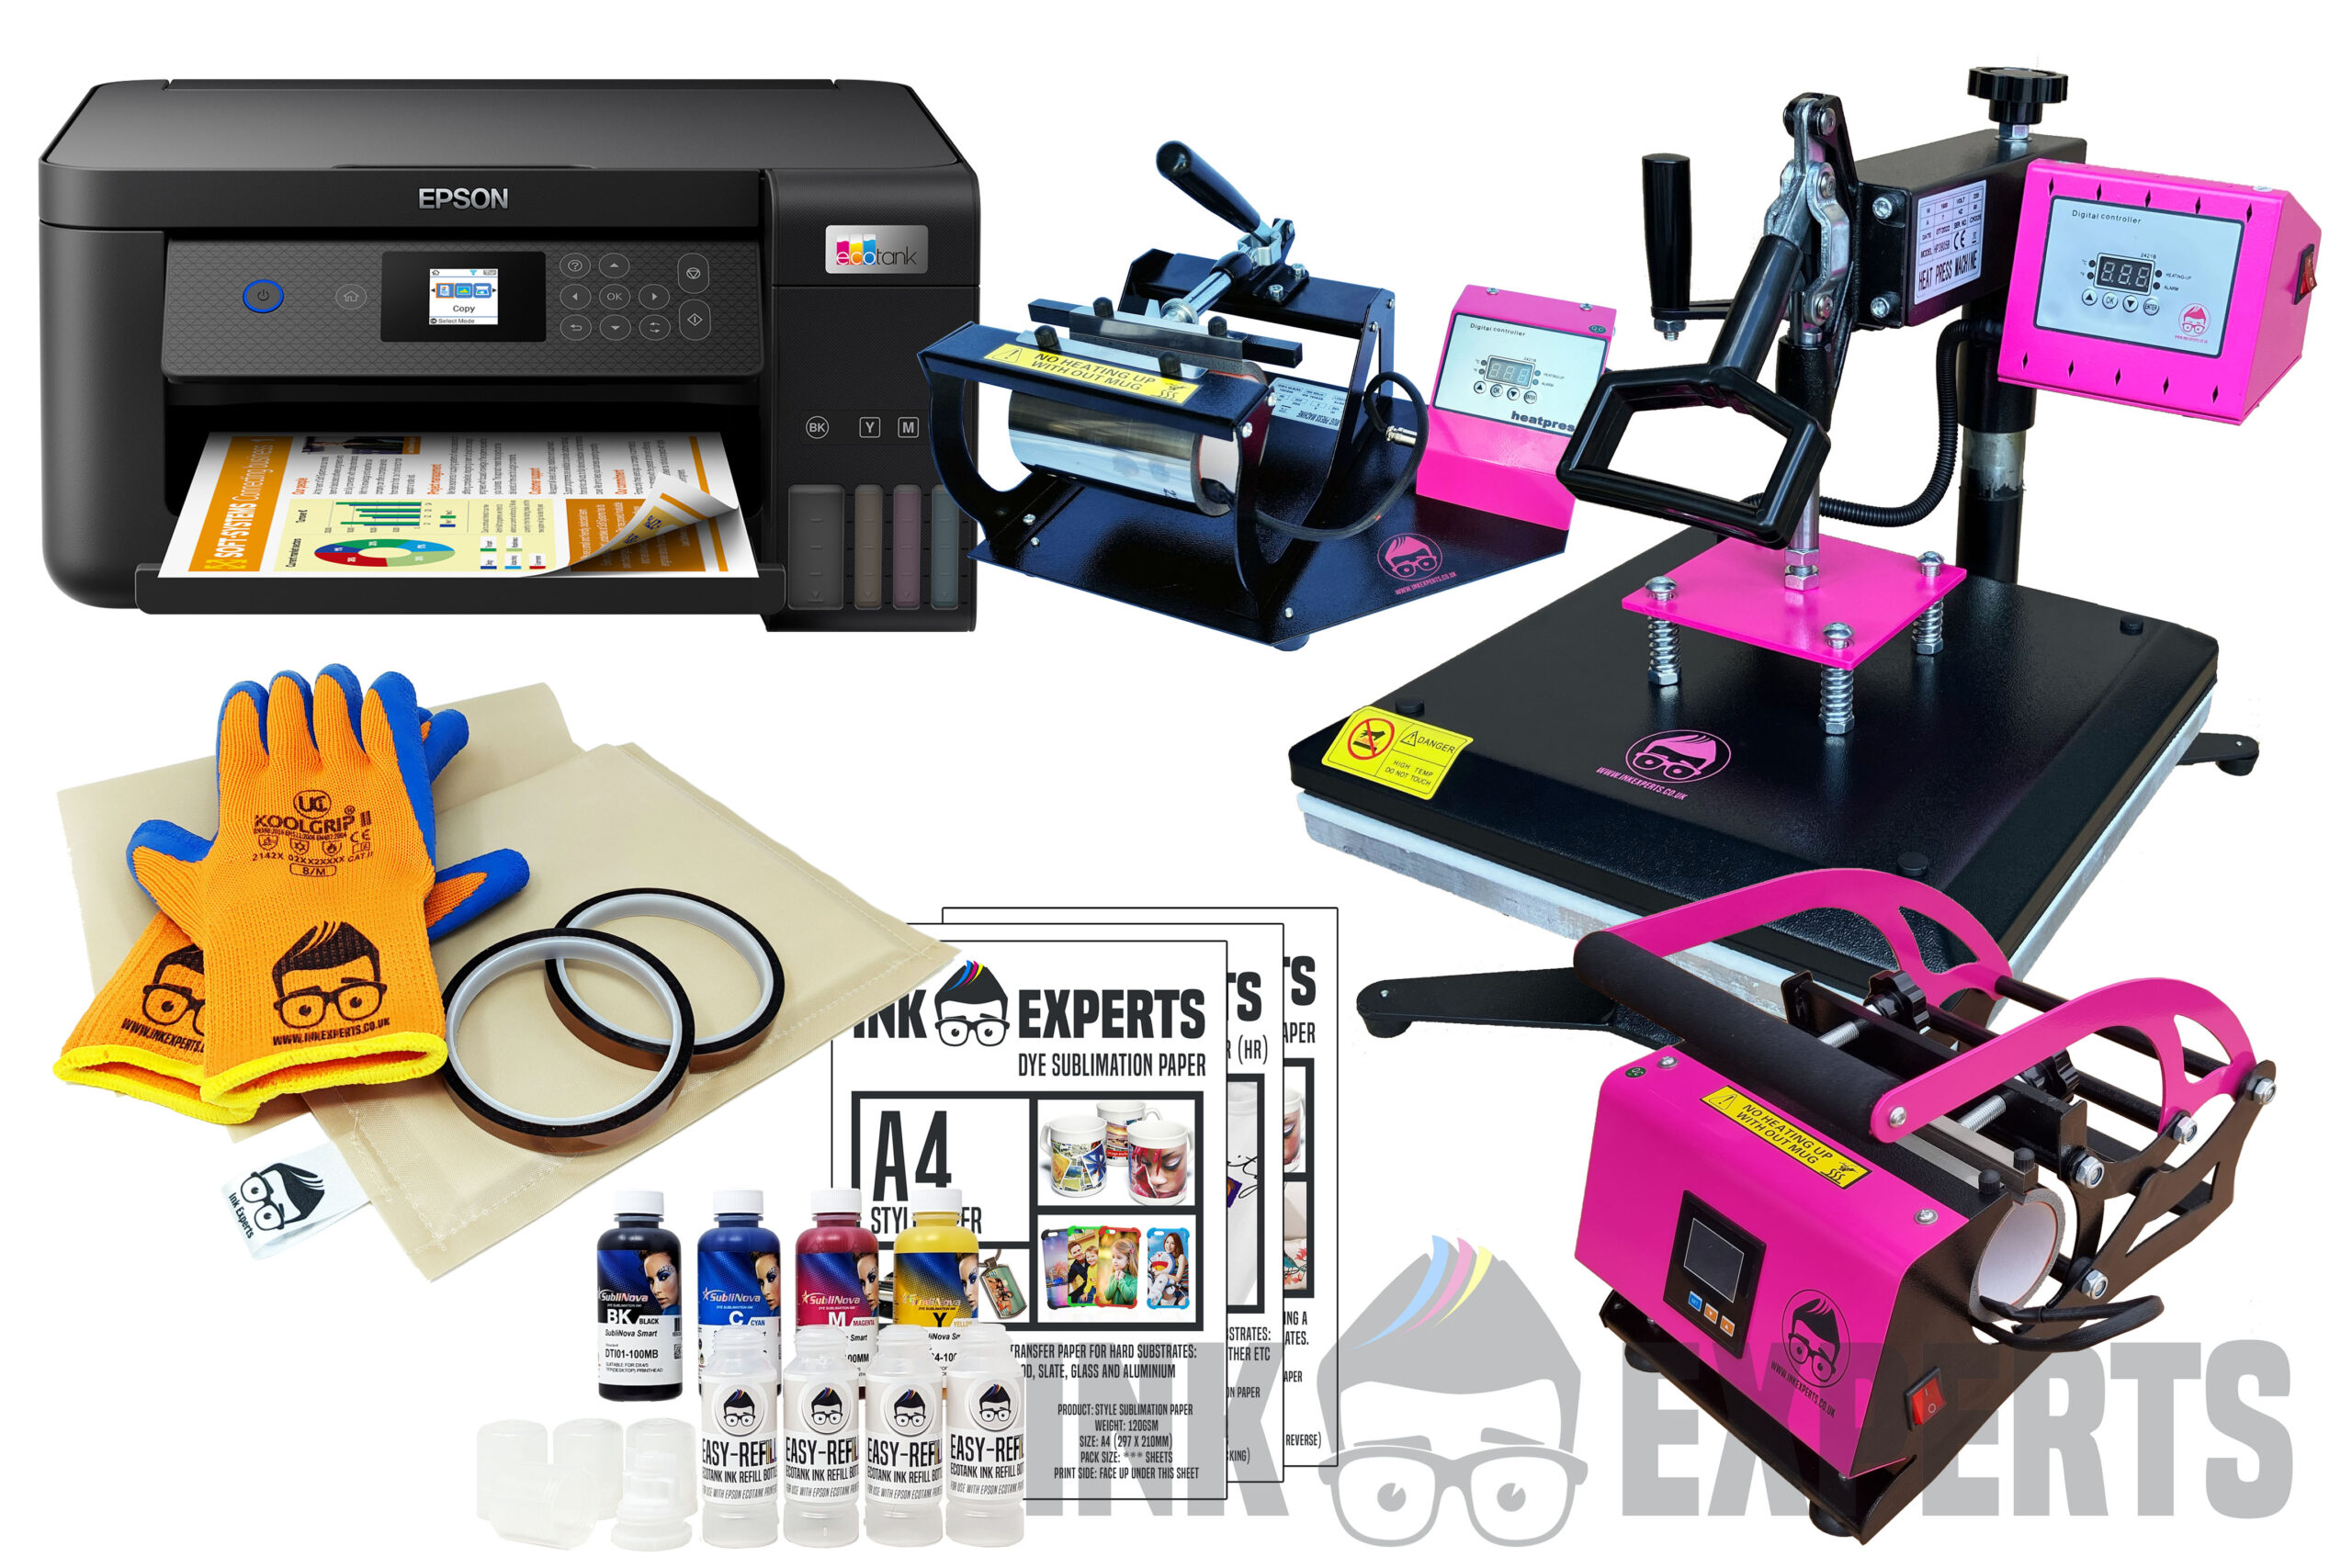 Kontur blanding årsag Sublimation Printers | Ink Experts